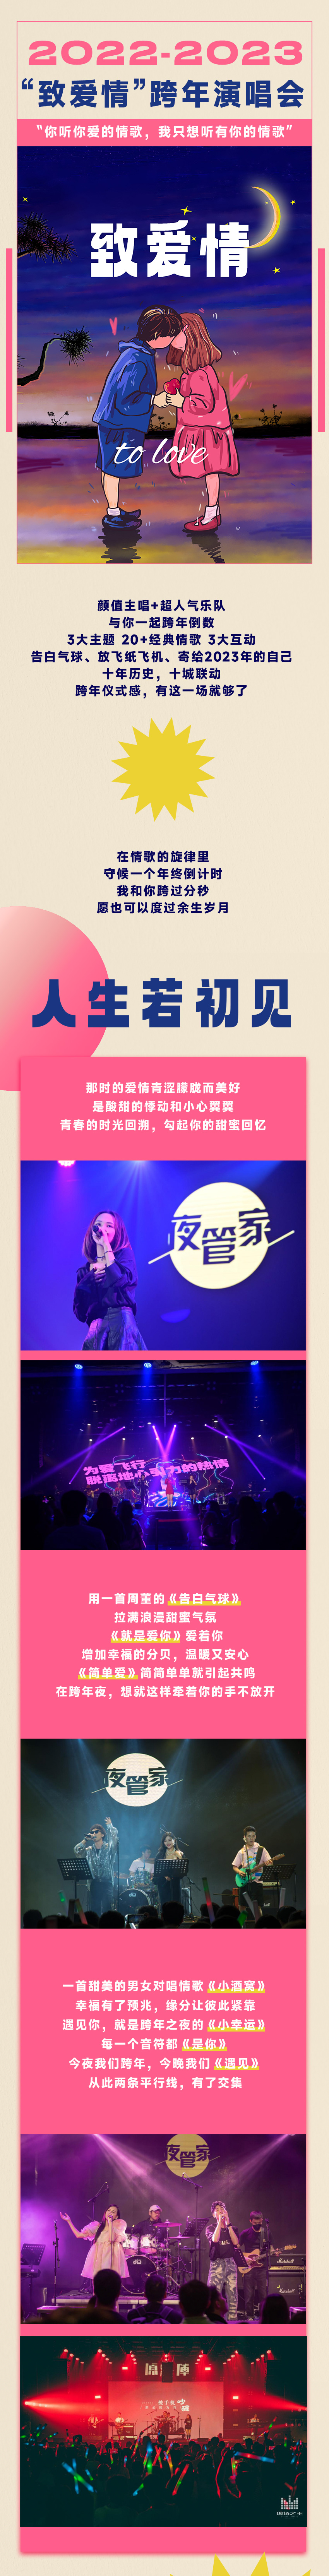 2022“致爱情”跨年演唱会—你听你爱的情歌，我只想听有你的情歌-杭州站